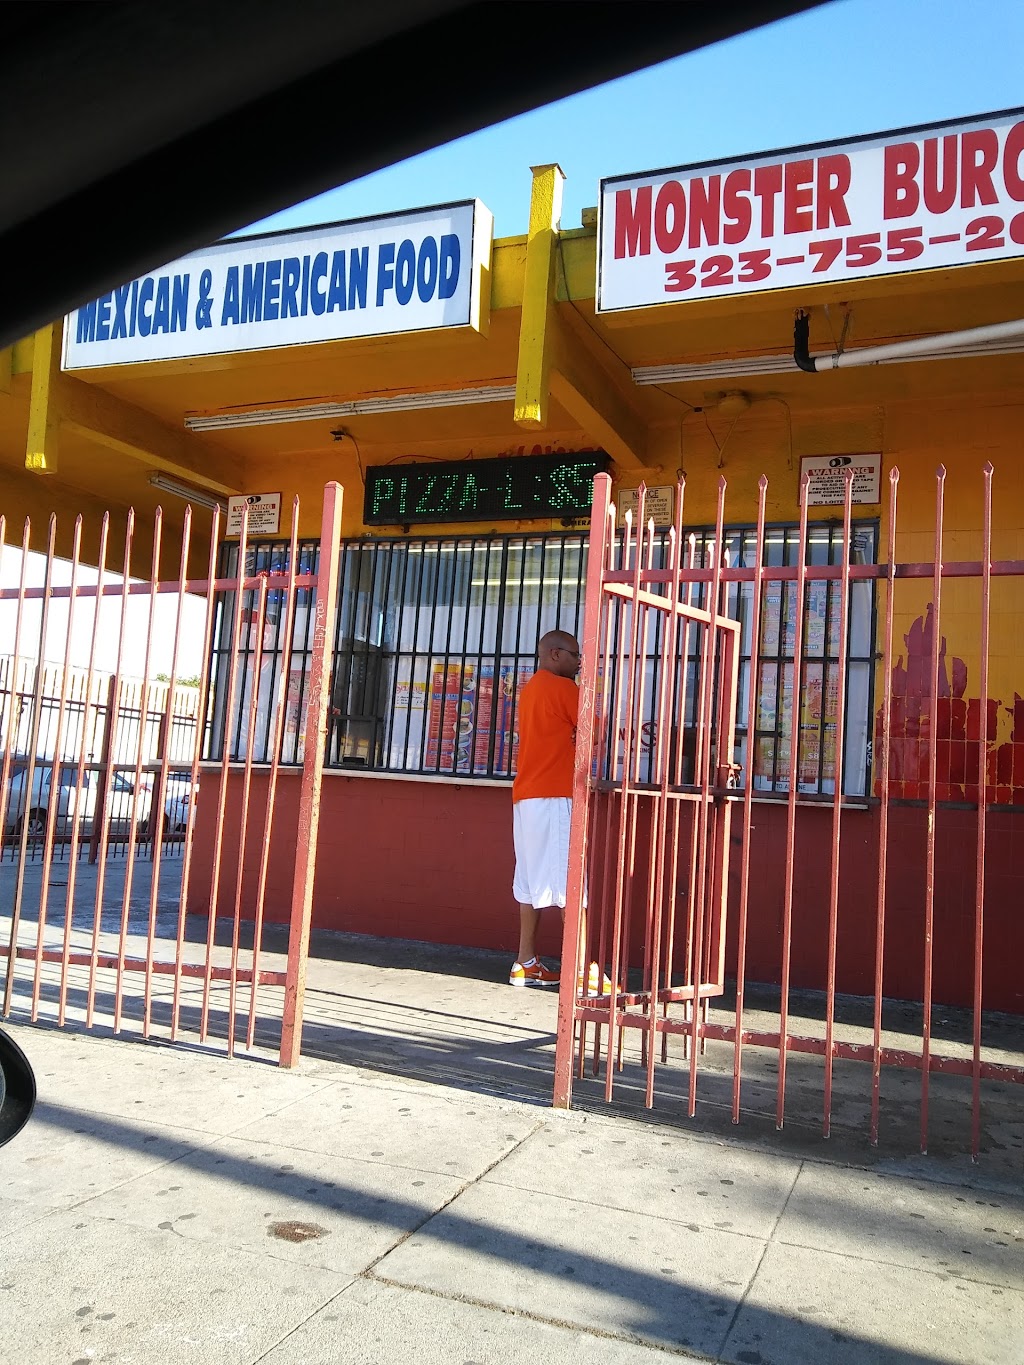 Monster Burger No. 2 | 10901 S Main St, Los Angeles, CA 90061, USA | Phone: (323) 755-2656